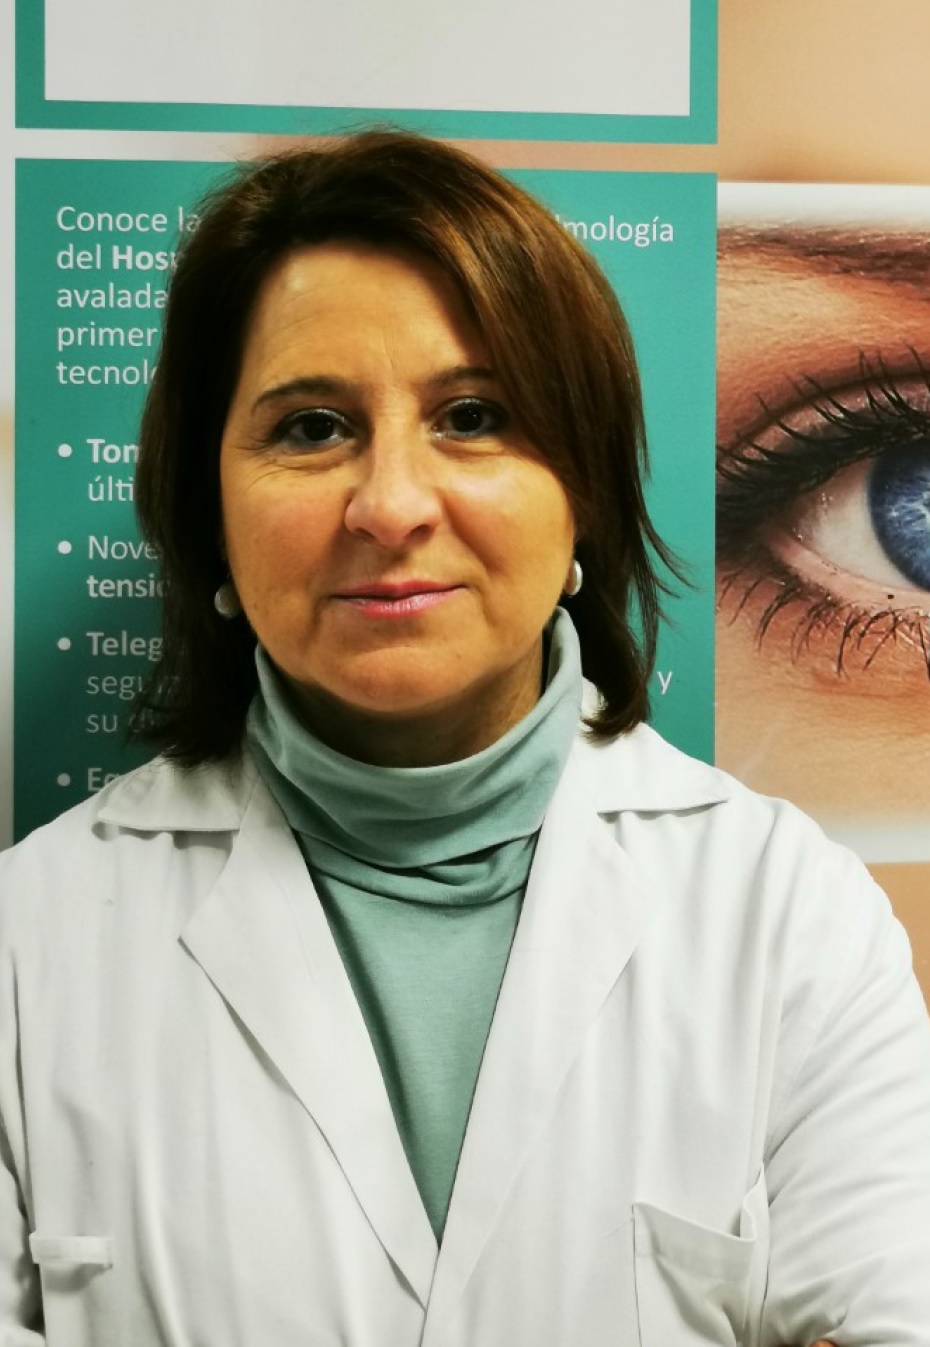 Dolores Escribano Oftalmologia Quirónsalud Albacete